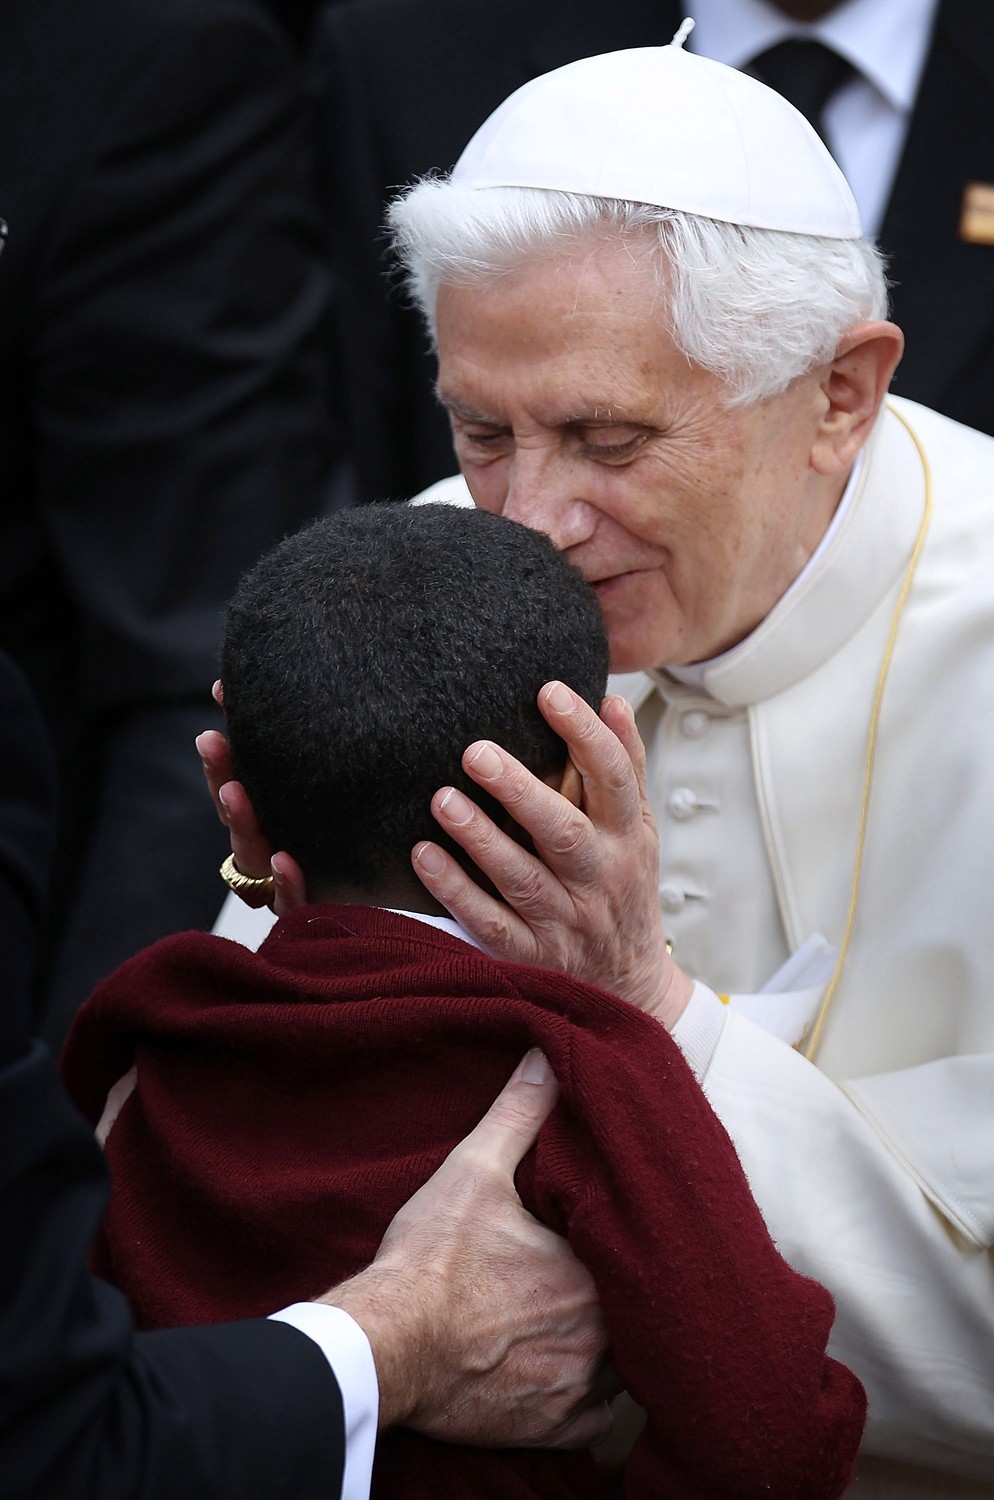 (FOTOGALLERY) Aneddoti e immagini curiose del pontificato di Benedetto XVI